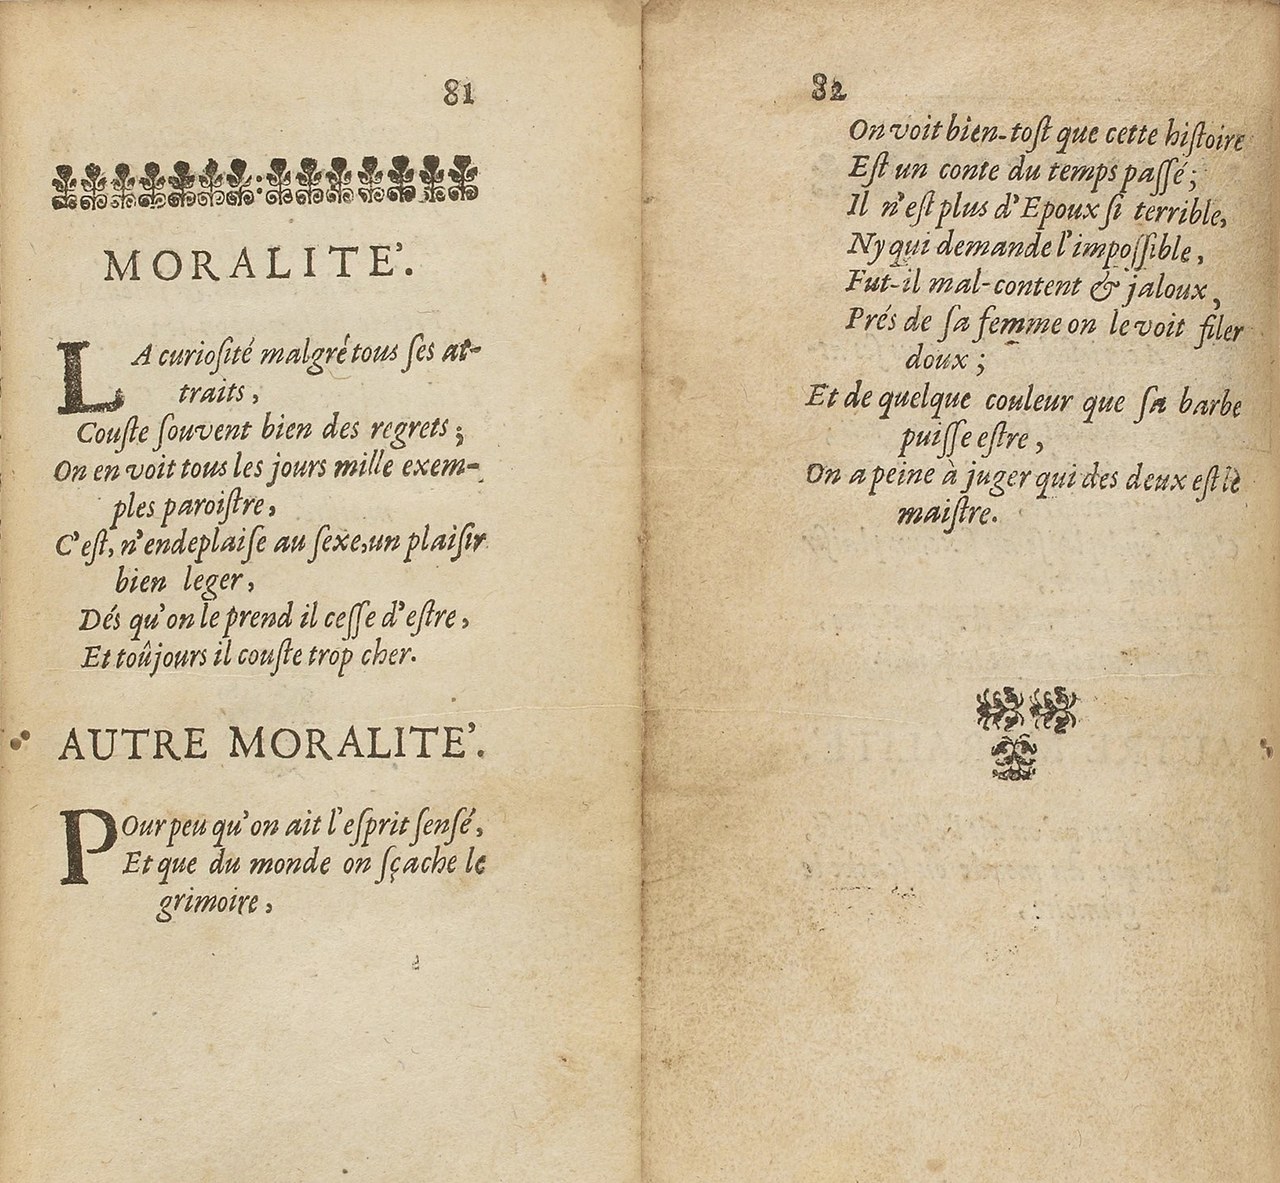  Le due morali in La Barbe bleüe di Perrault, ed. or. 1697 (gallica.bnf.fr / BNF)